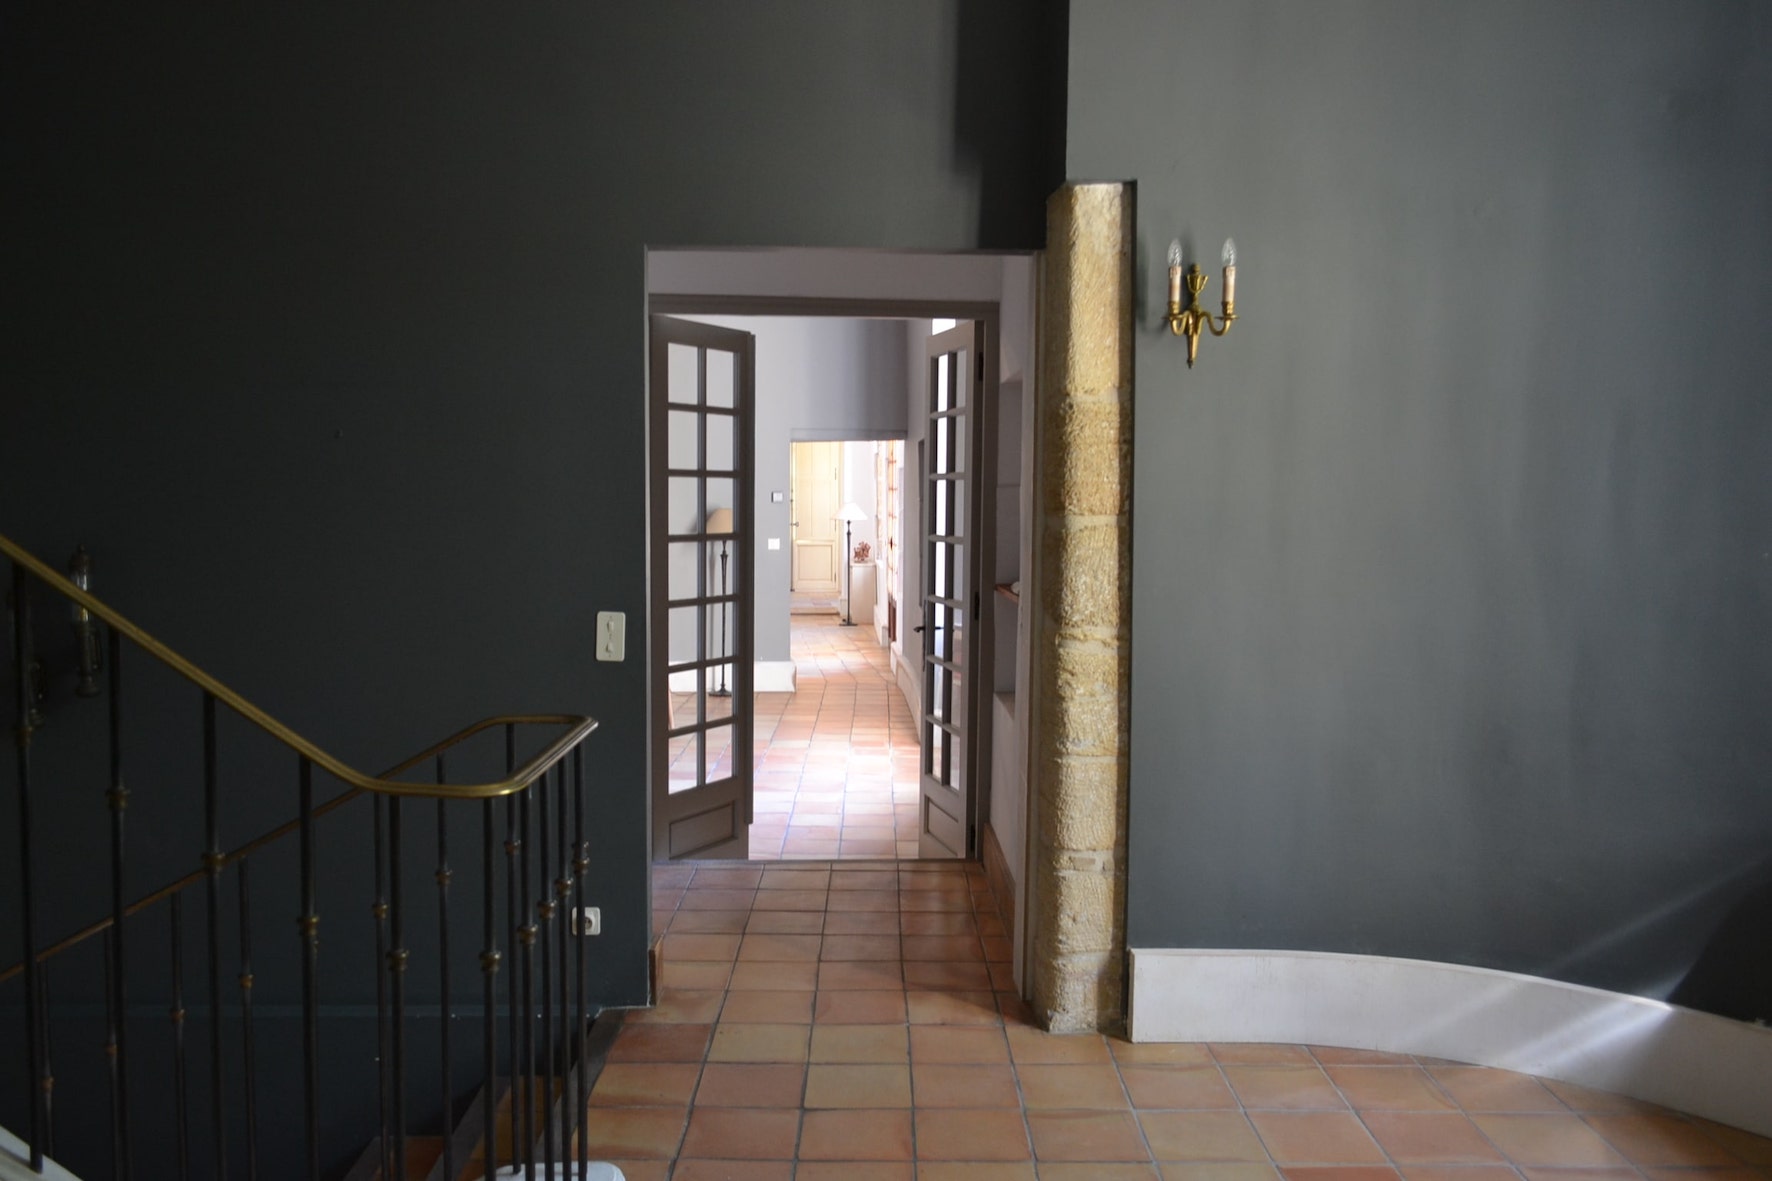 Porte intérieure petits carreaux donnant sur couloir en terre cuite.